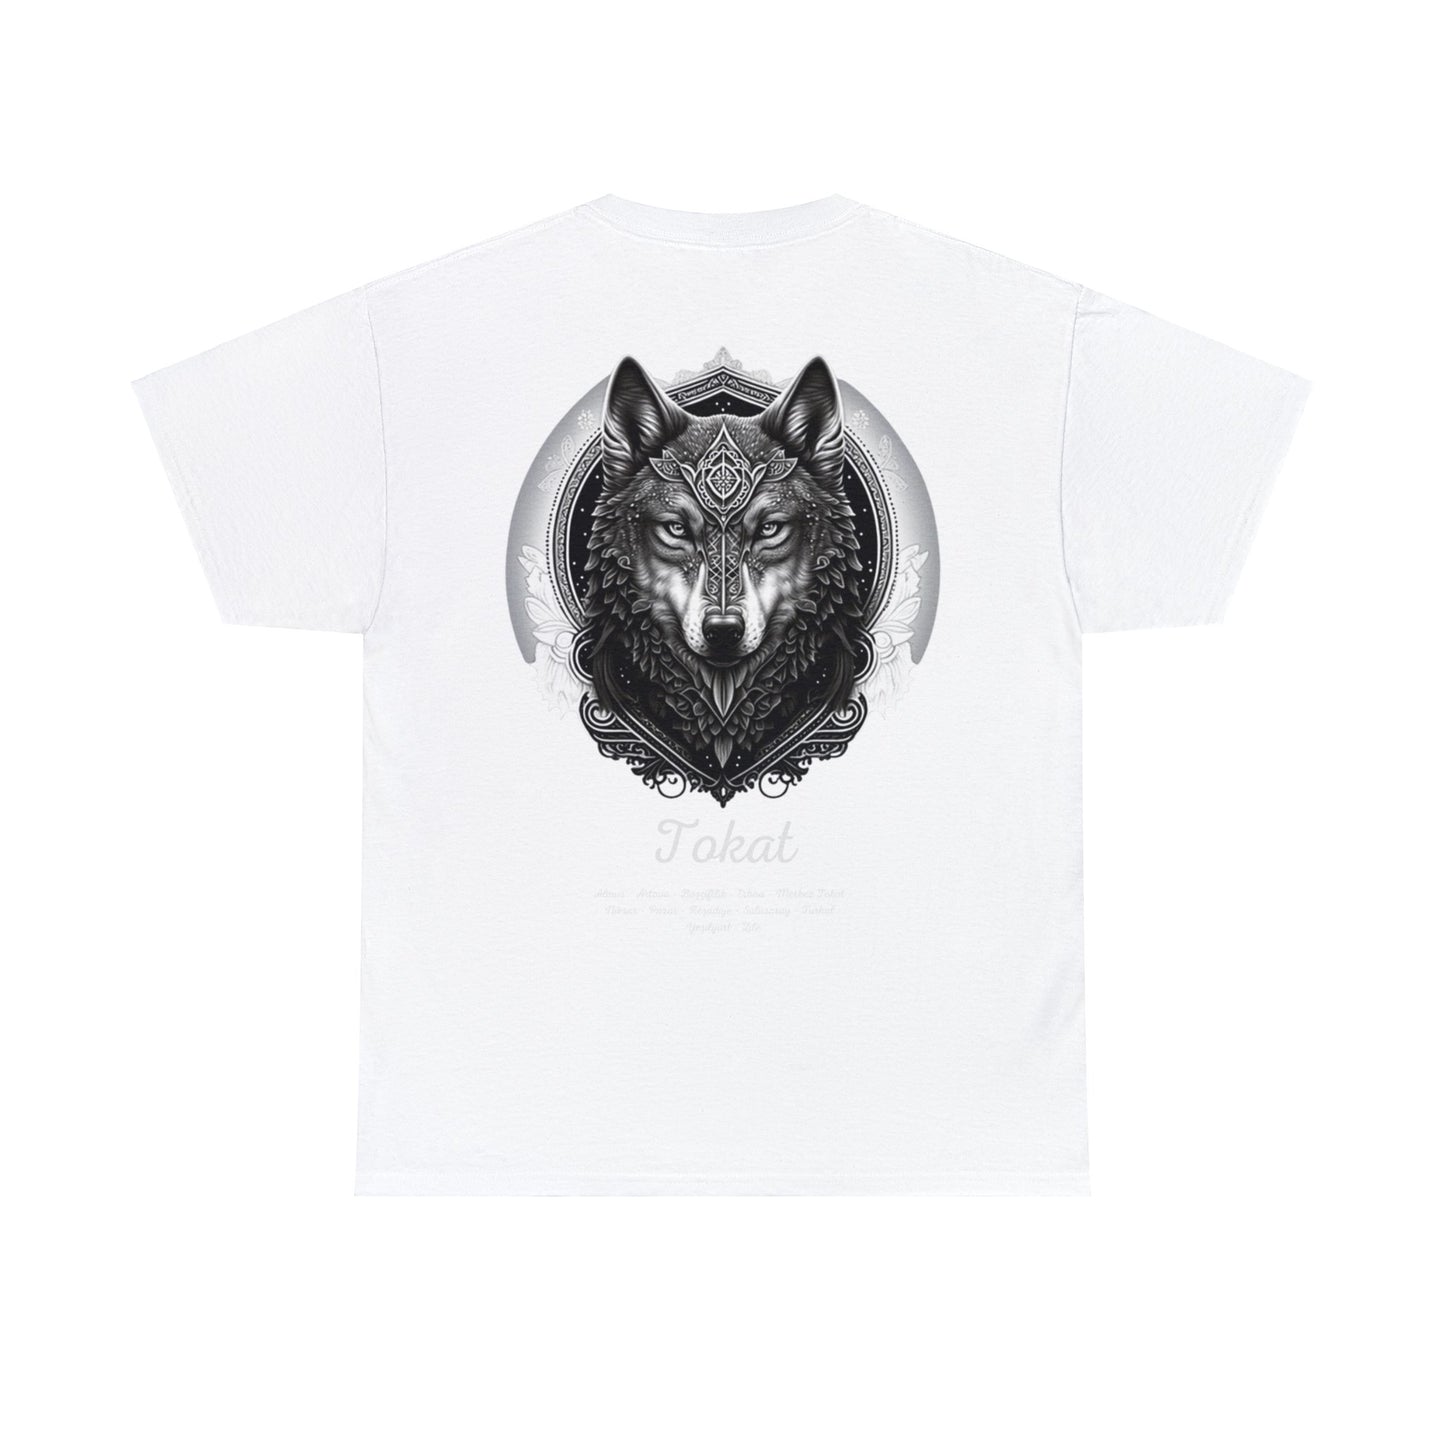 Kurt - 60 Tokat - T-Shirt - Back Print - Black/White